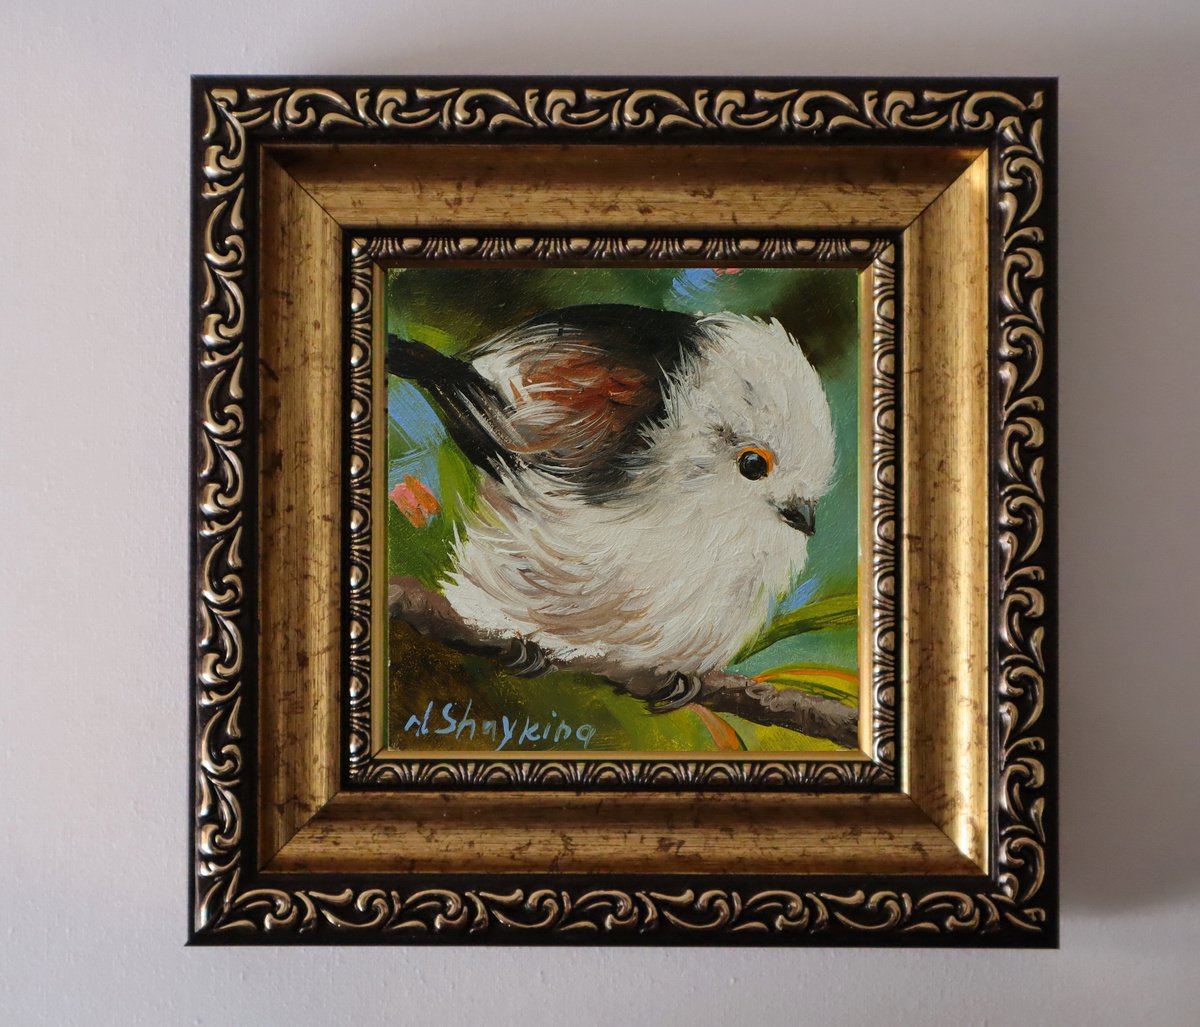 Bird, Silver-throated Bushtit by Natalia Shaykina